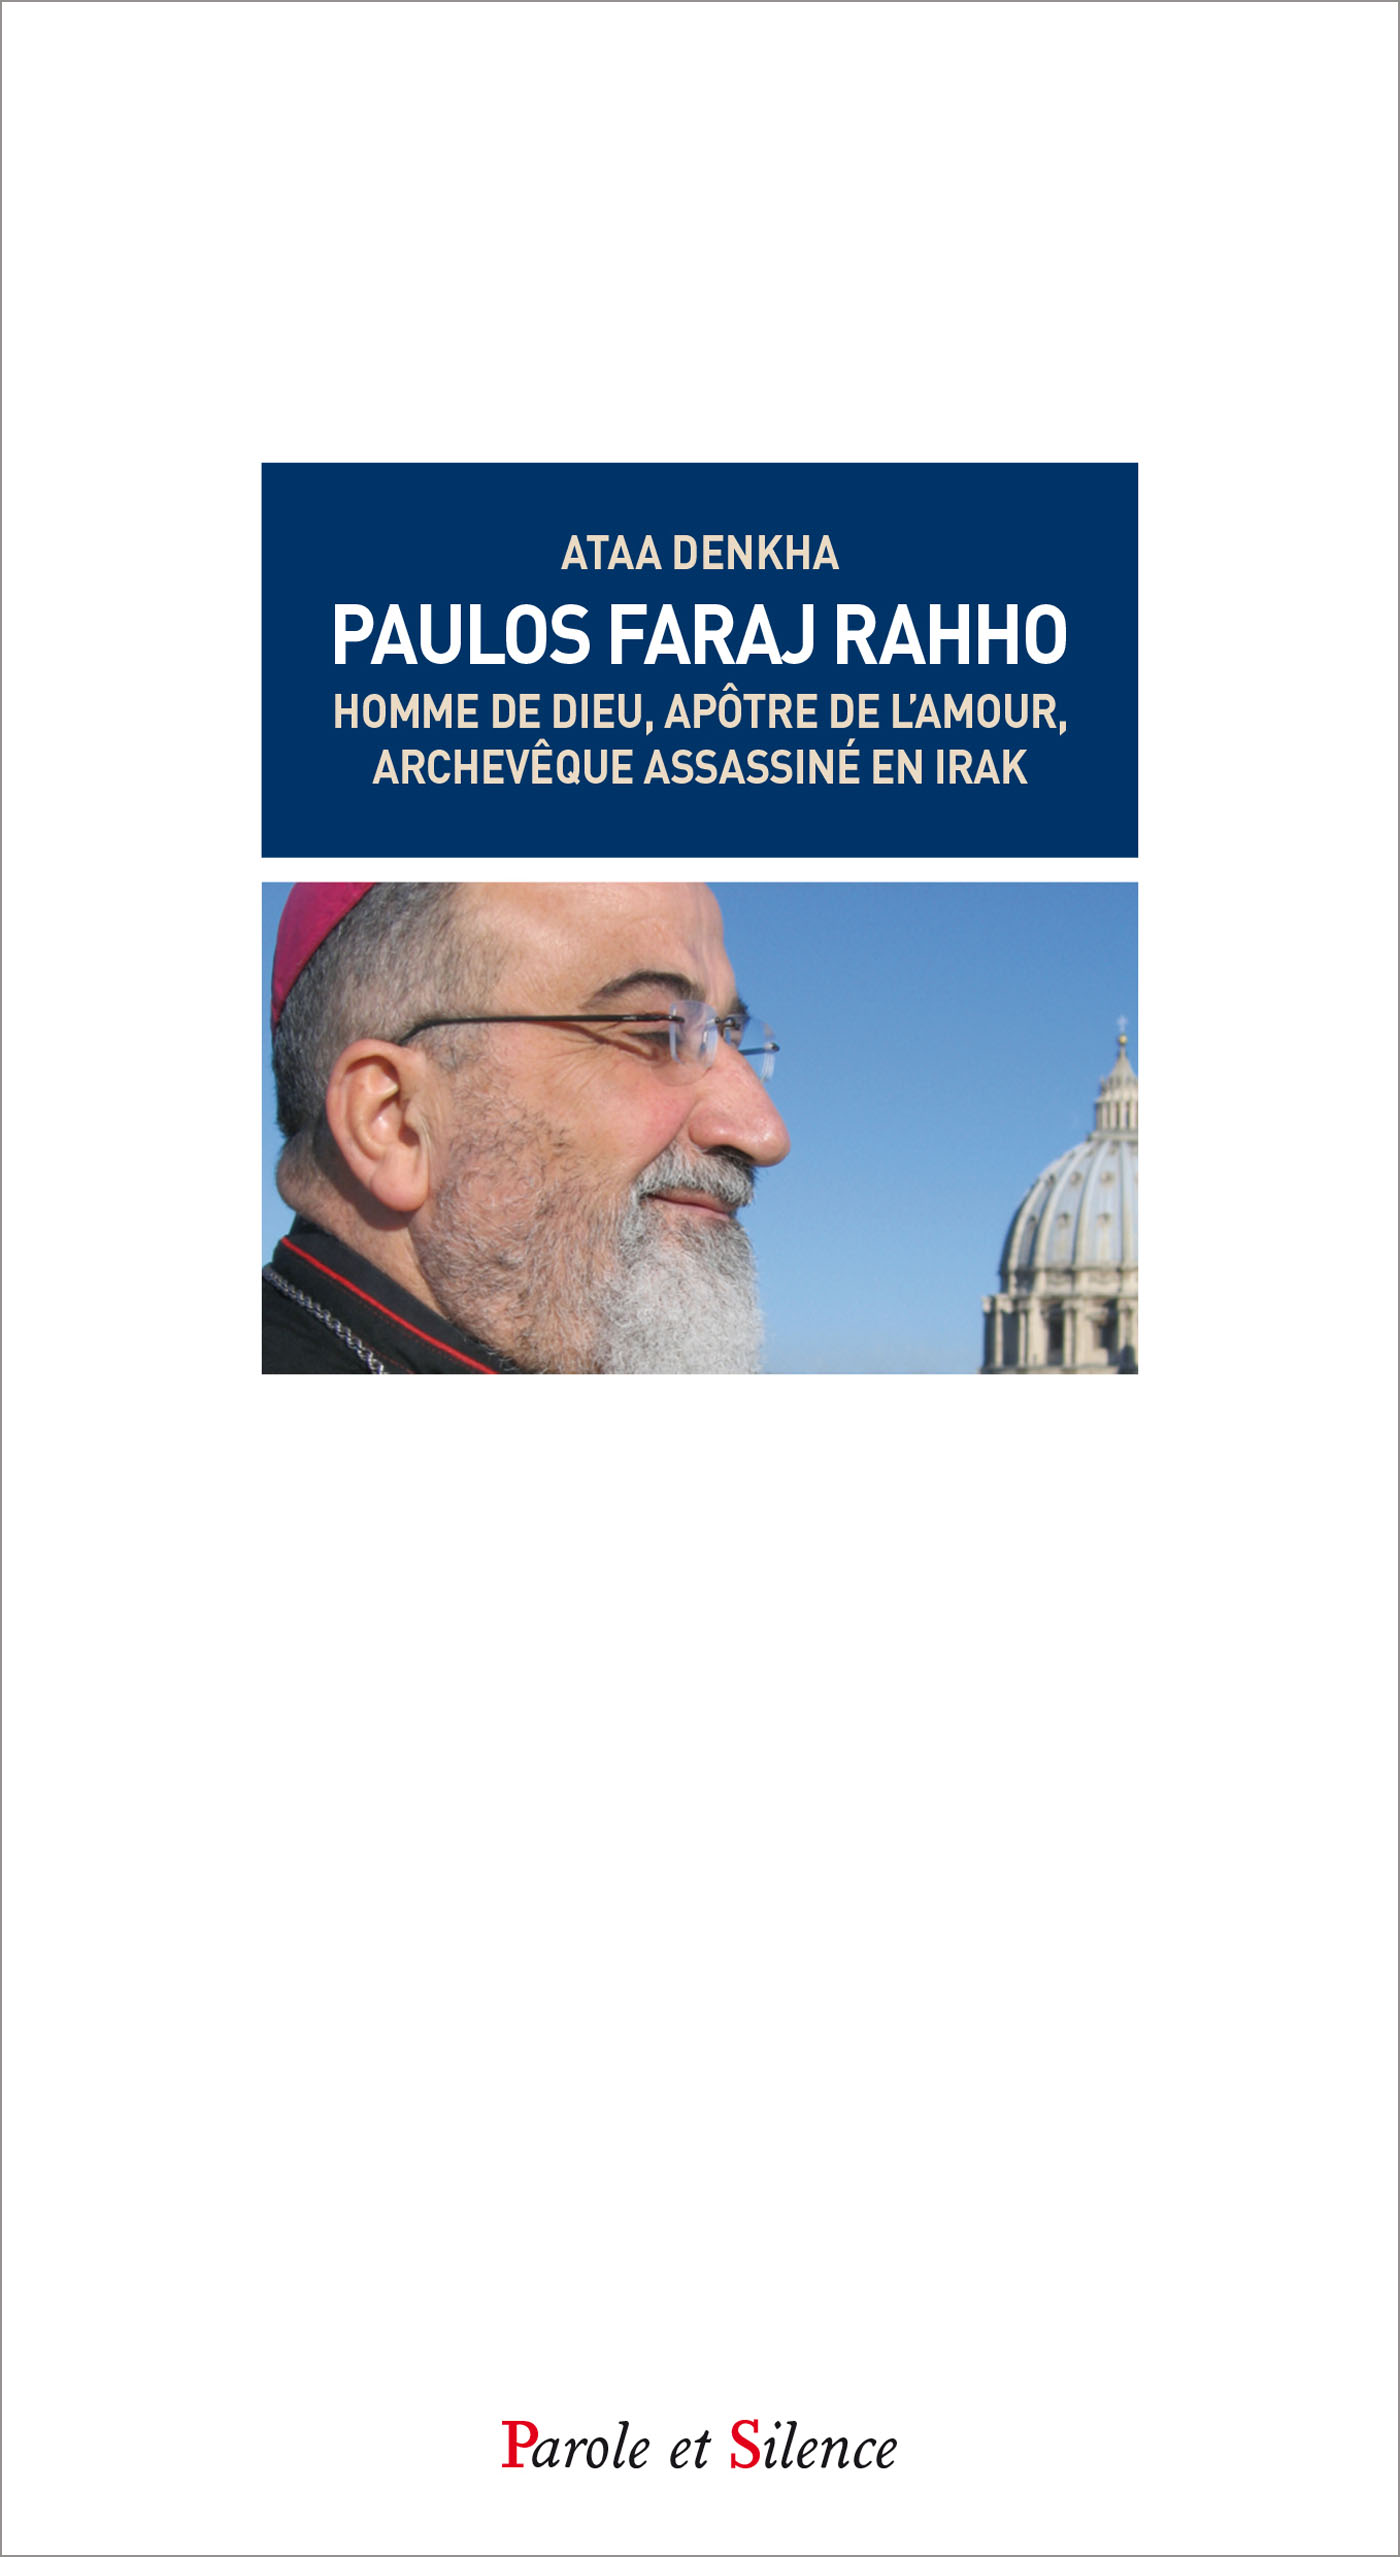 Monseigneur Paulos Faraj Rahho